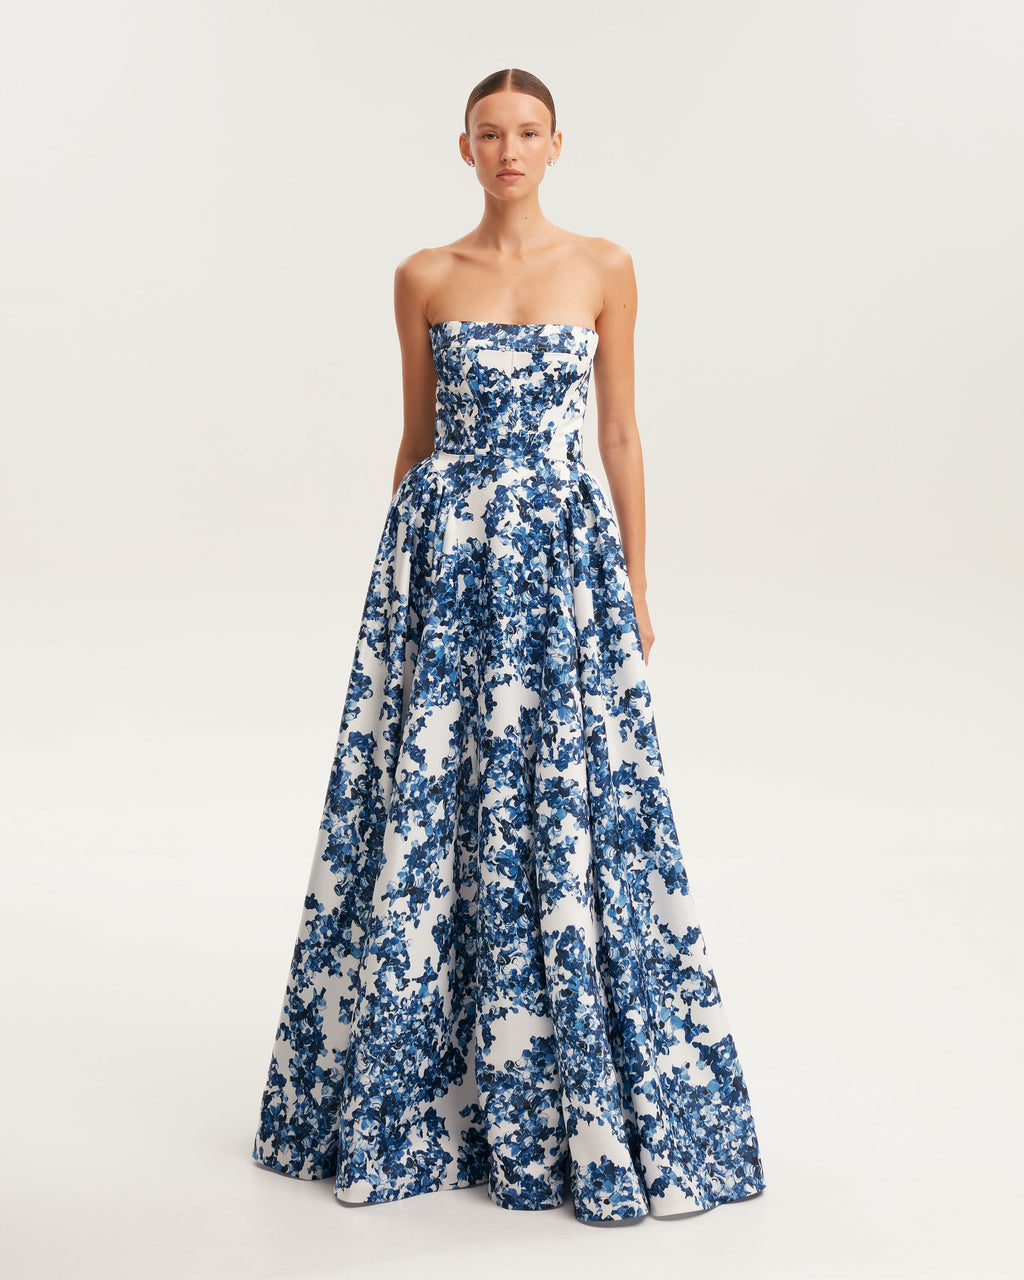 Wedding Dresses & Bridal Boutique Toronto | Amanda Linas